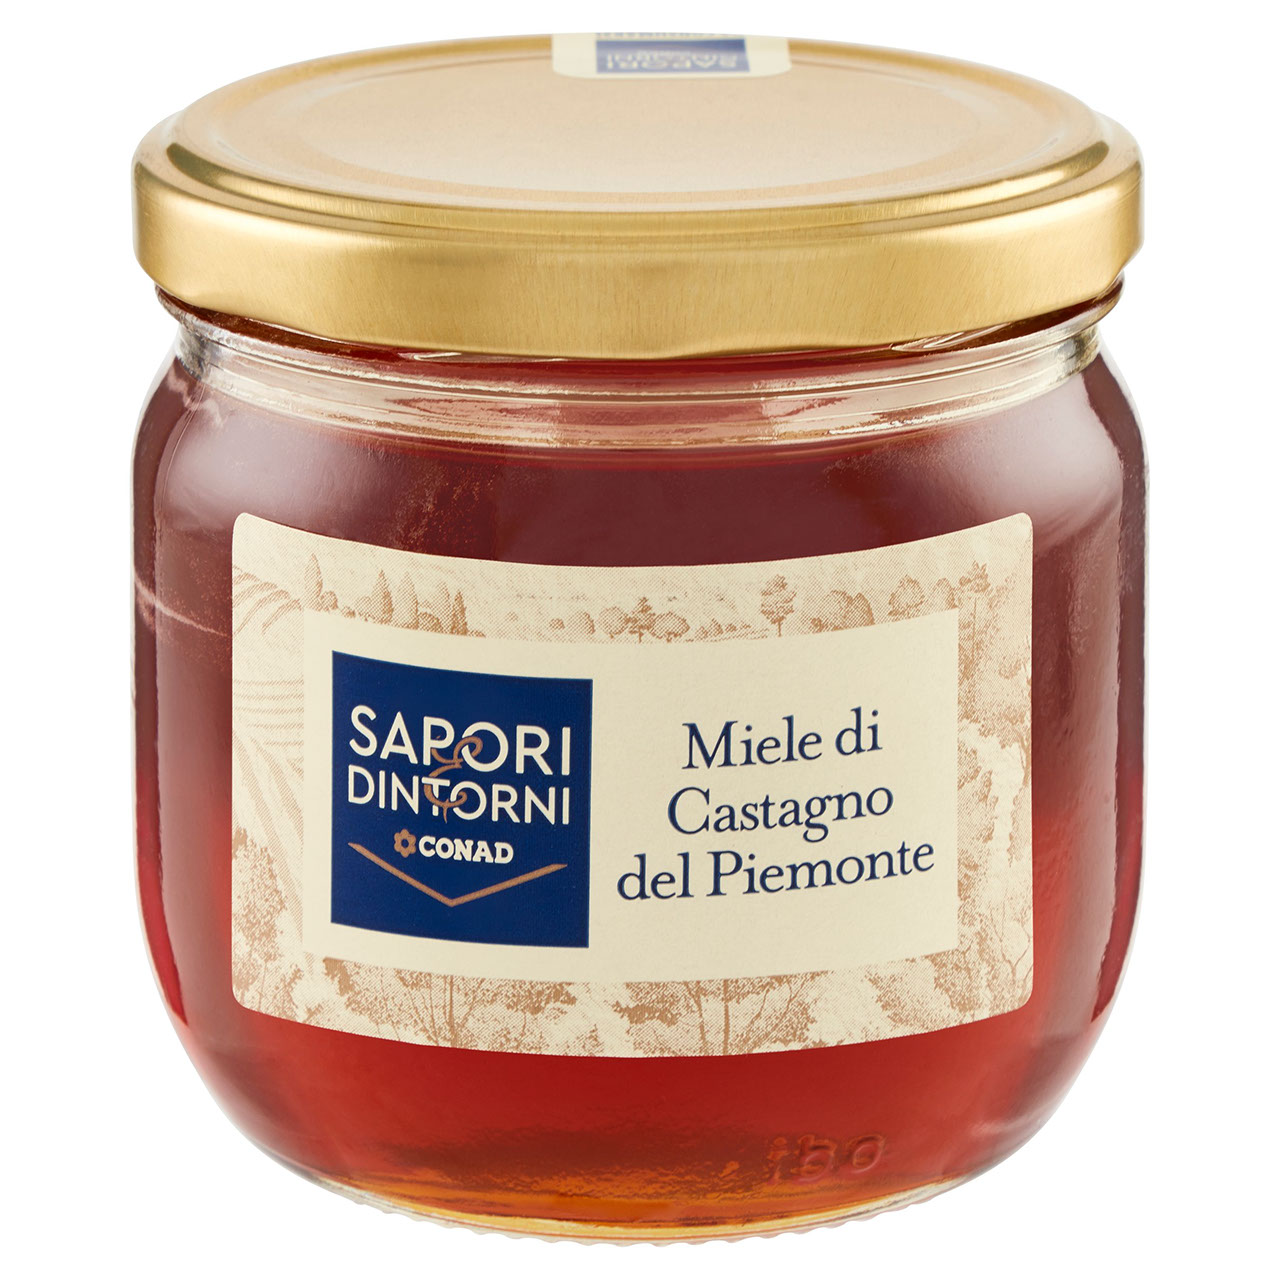 SAPORI & DINTORNI CONAD Miele di Castagno del Piemonte 400 g